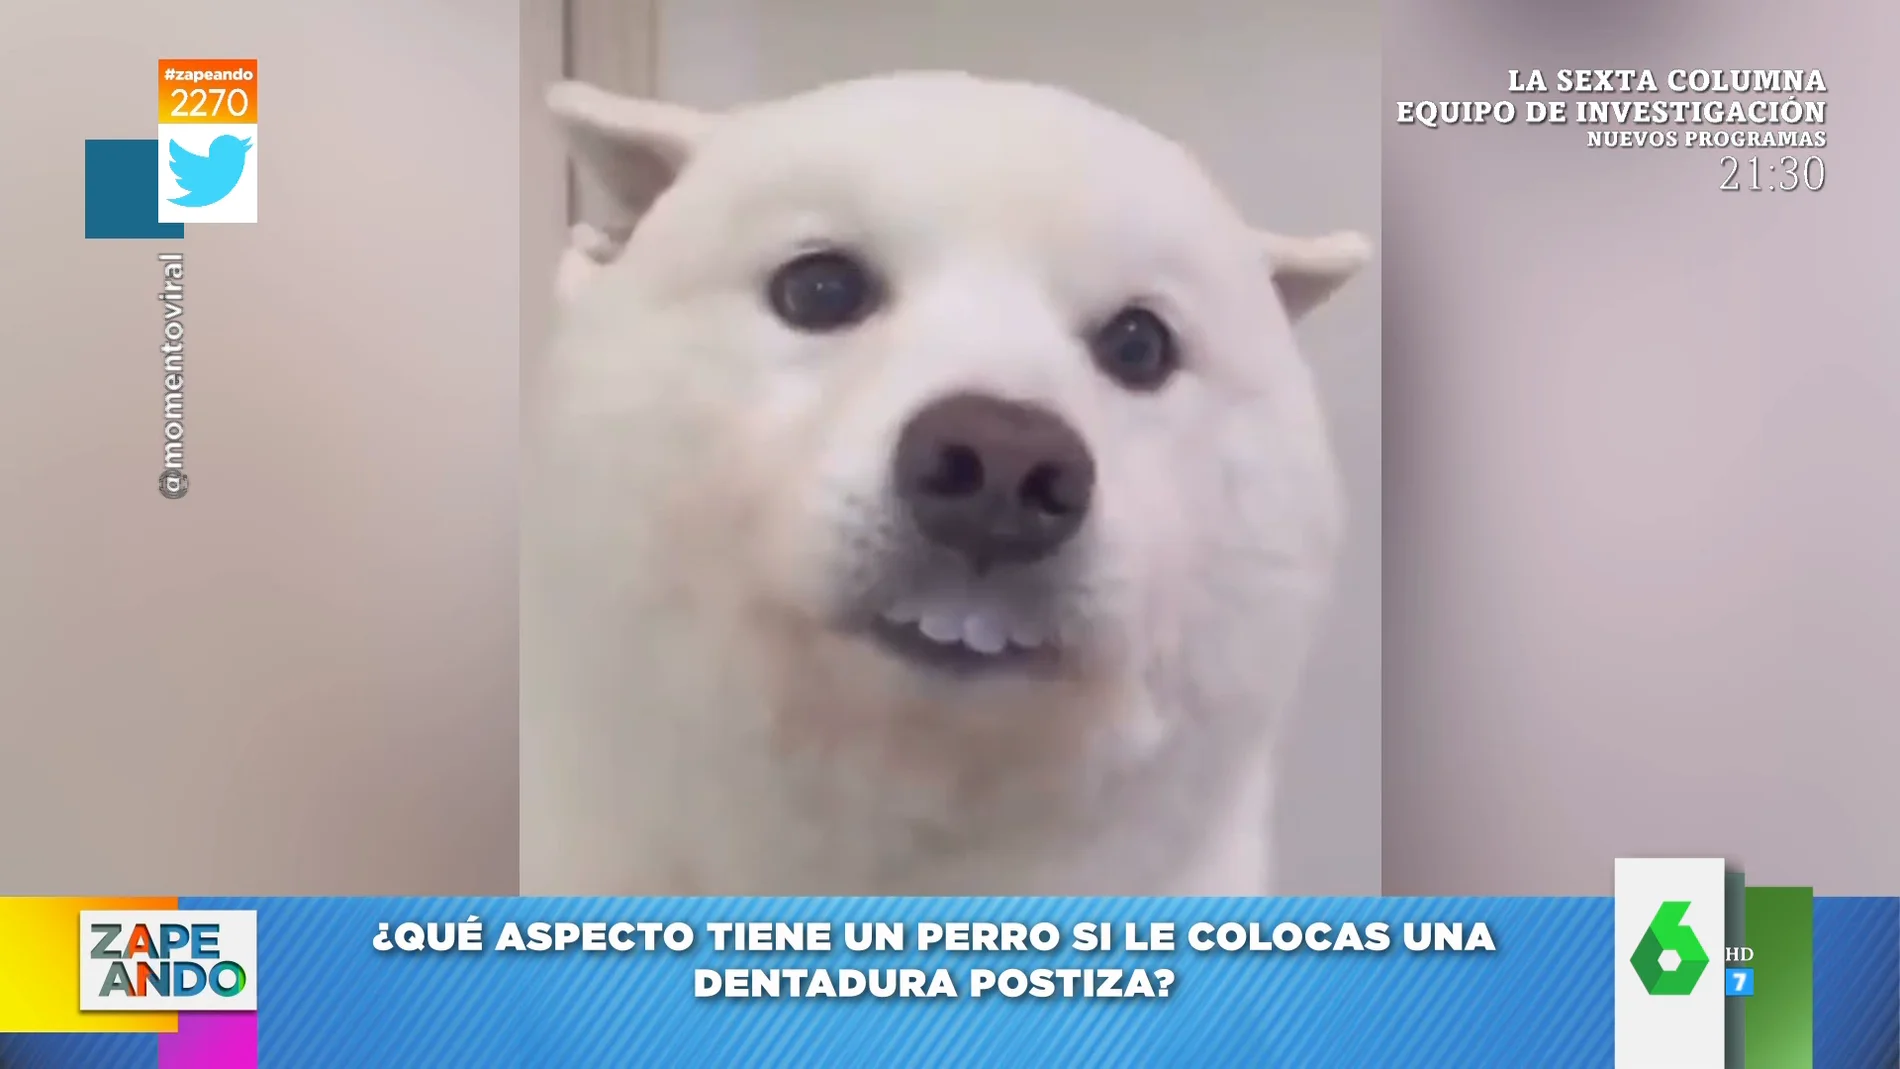 La cómica imagen de un perro al que su dueño le ha puesto dentadura postiza